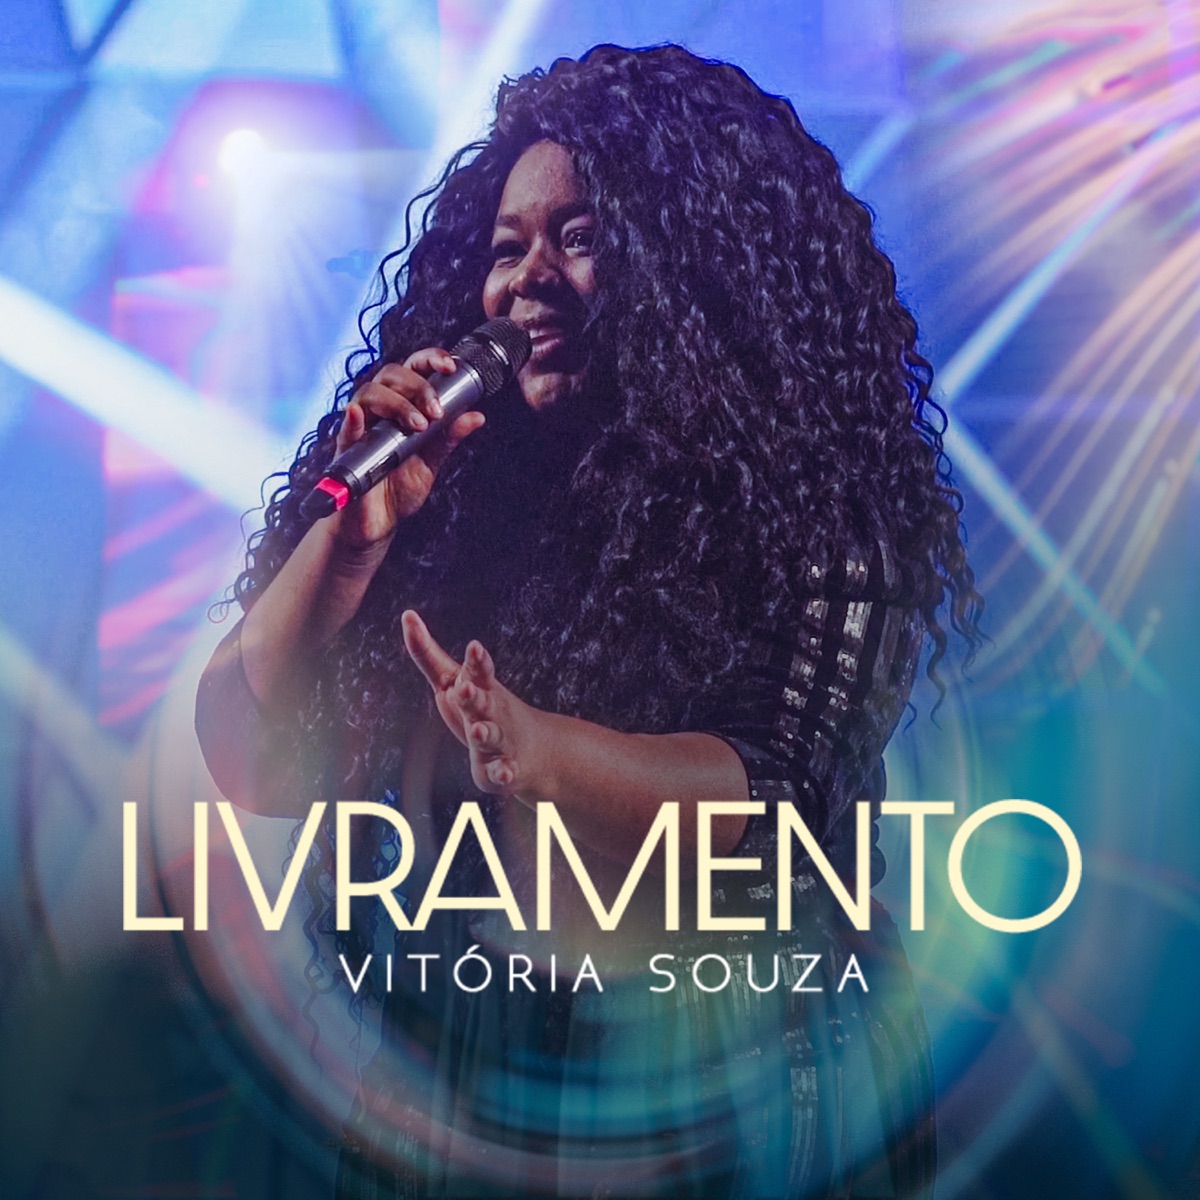 Fica Tranquilo Filho - Single - Album by Vitória Souza - Apple Music